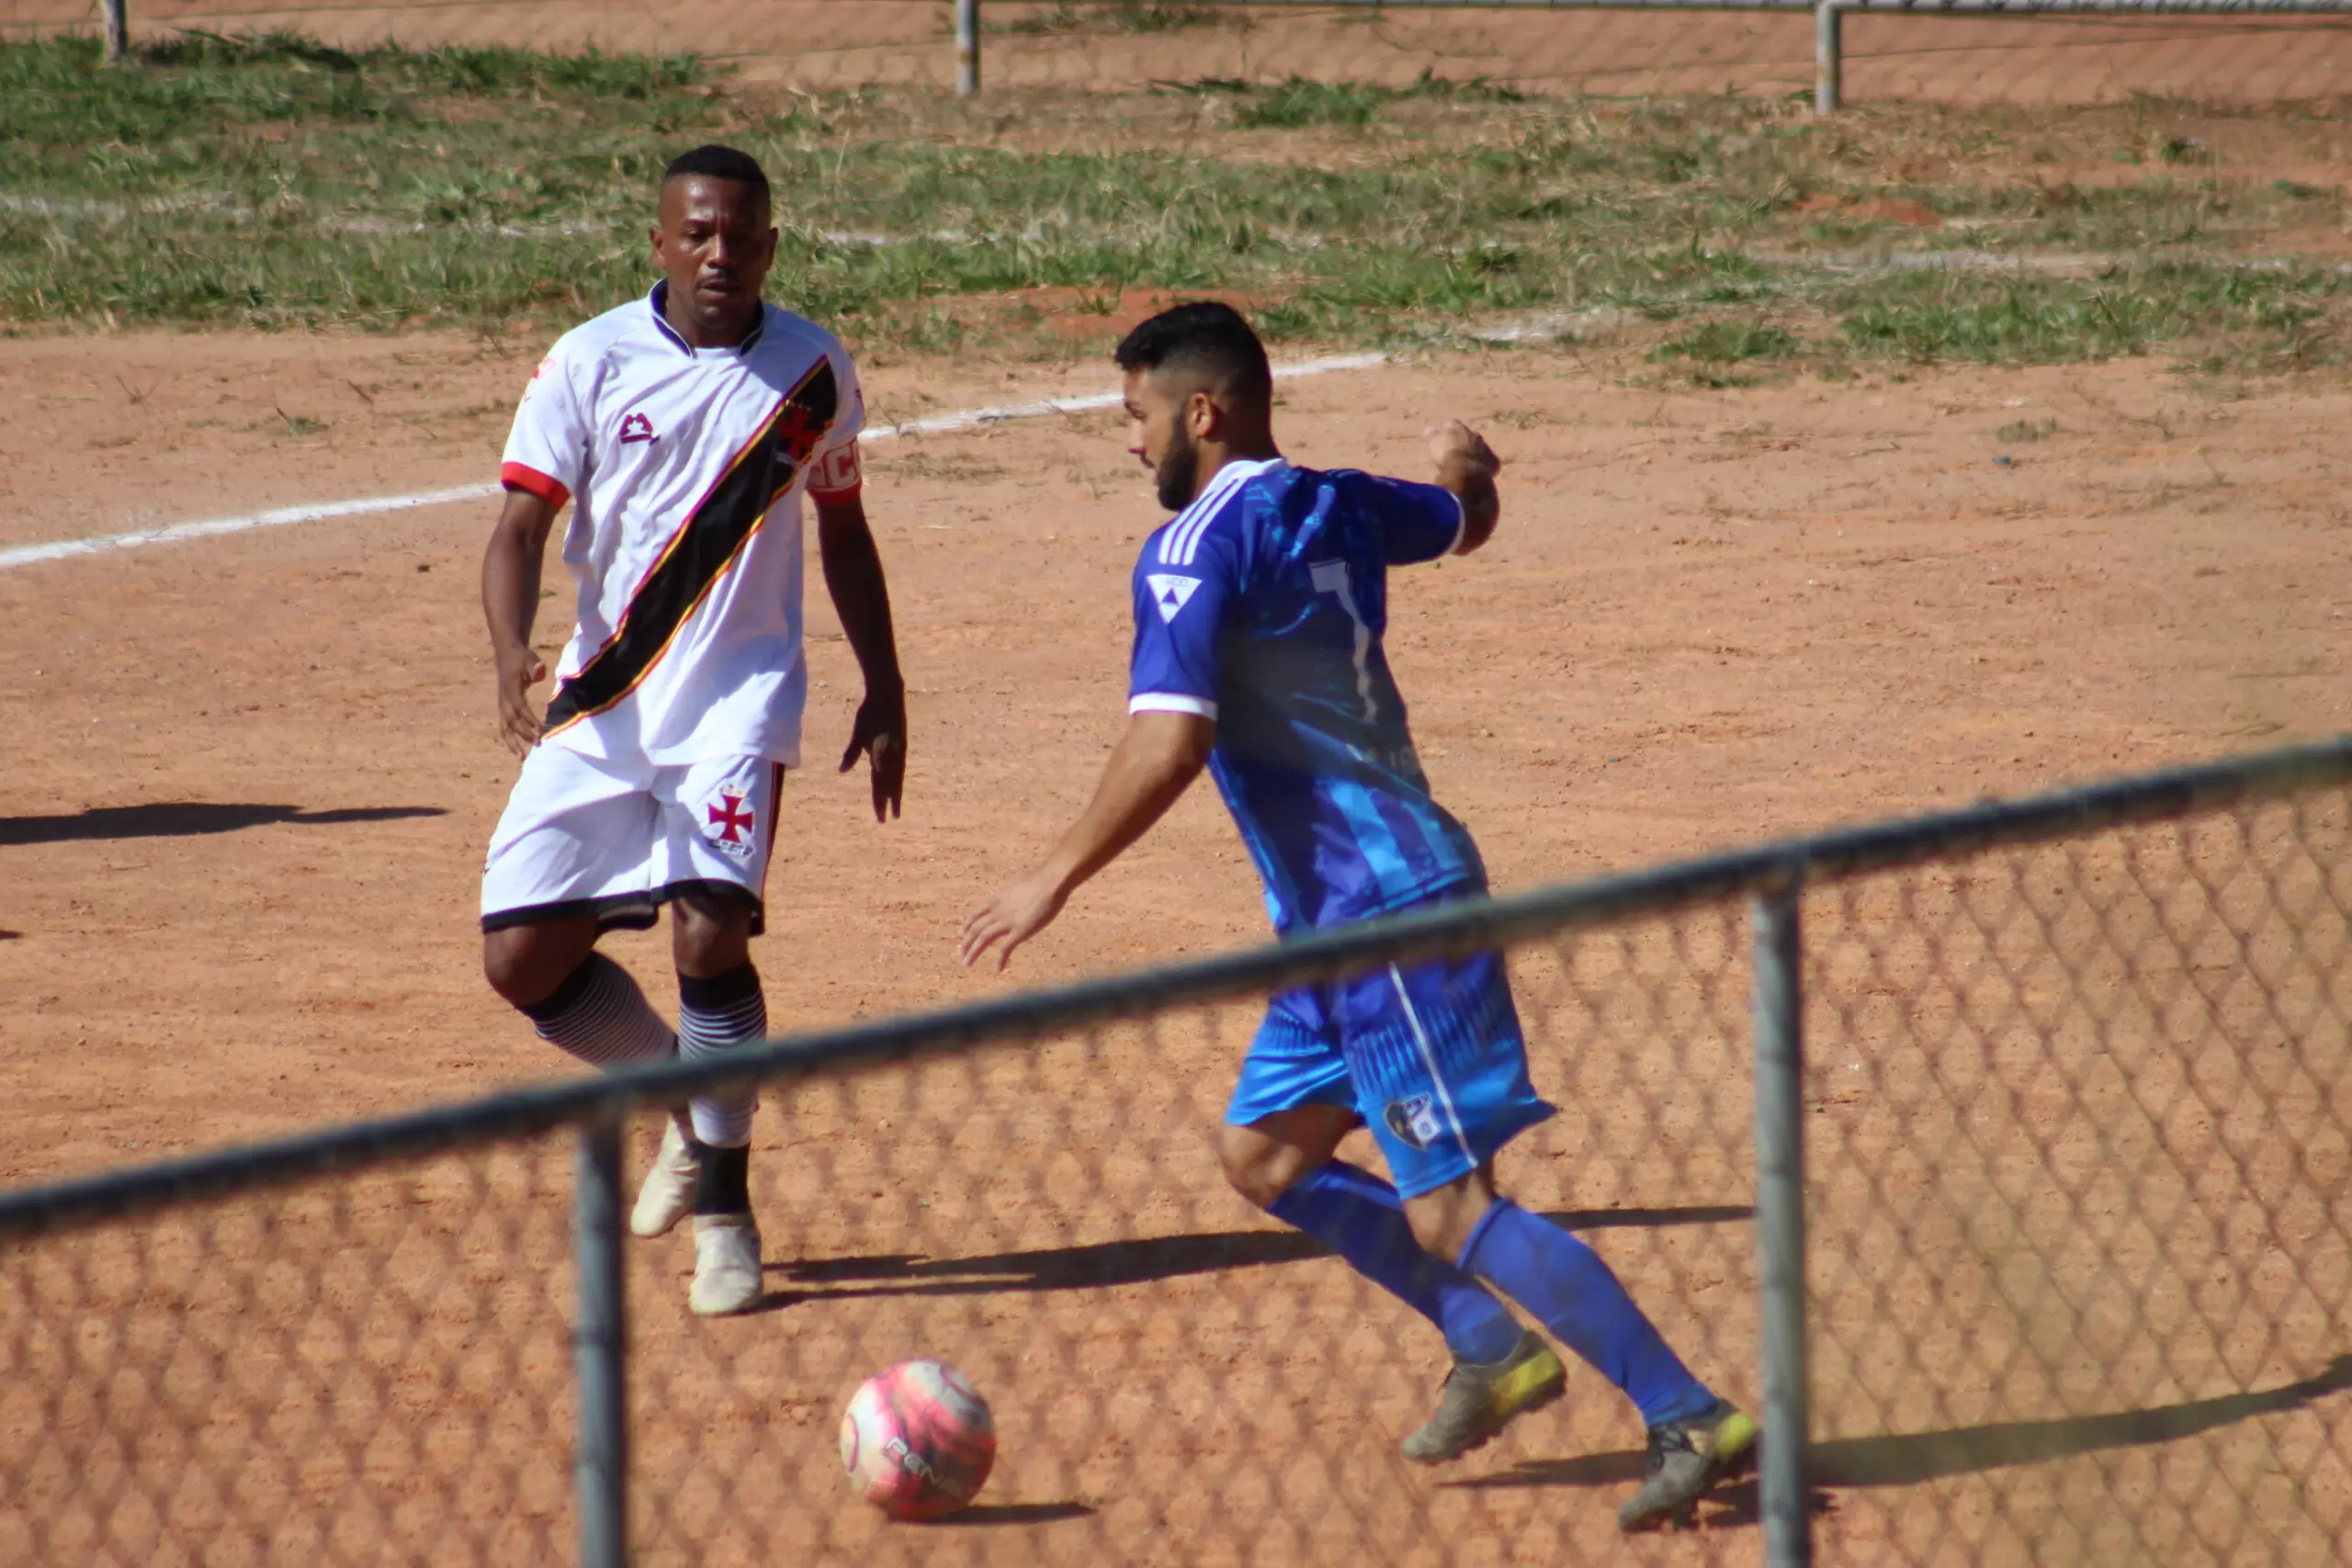 Campeonato amador de futebol promovido pela Liga Municipal de Divinópolis